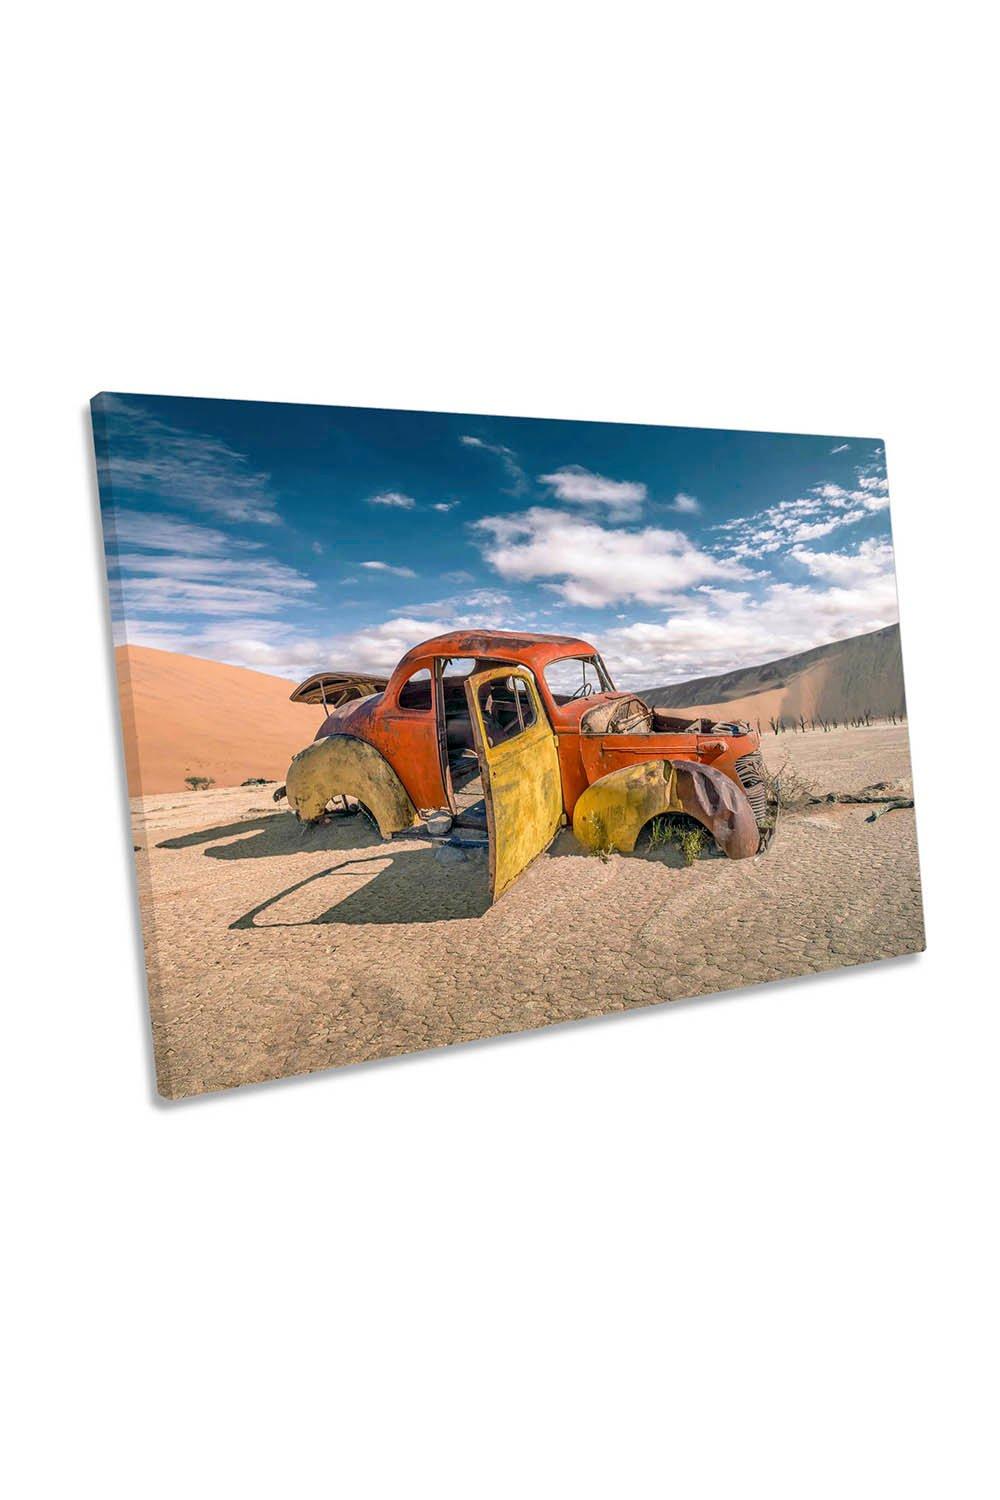 Desert Abandoned Car Forgotten Canvas Wall Art Picture Print